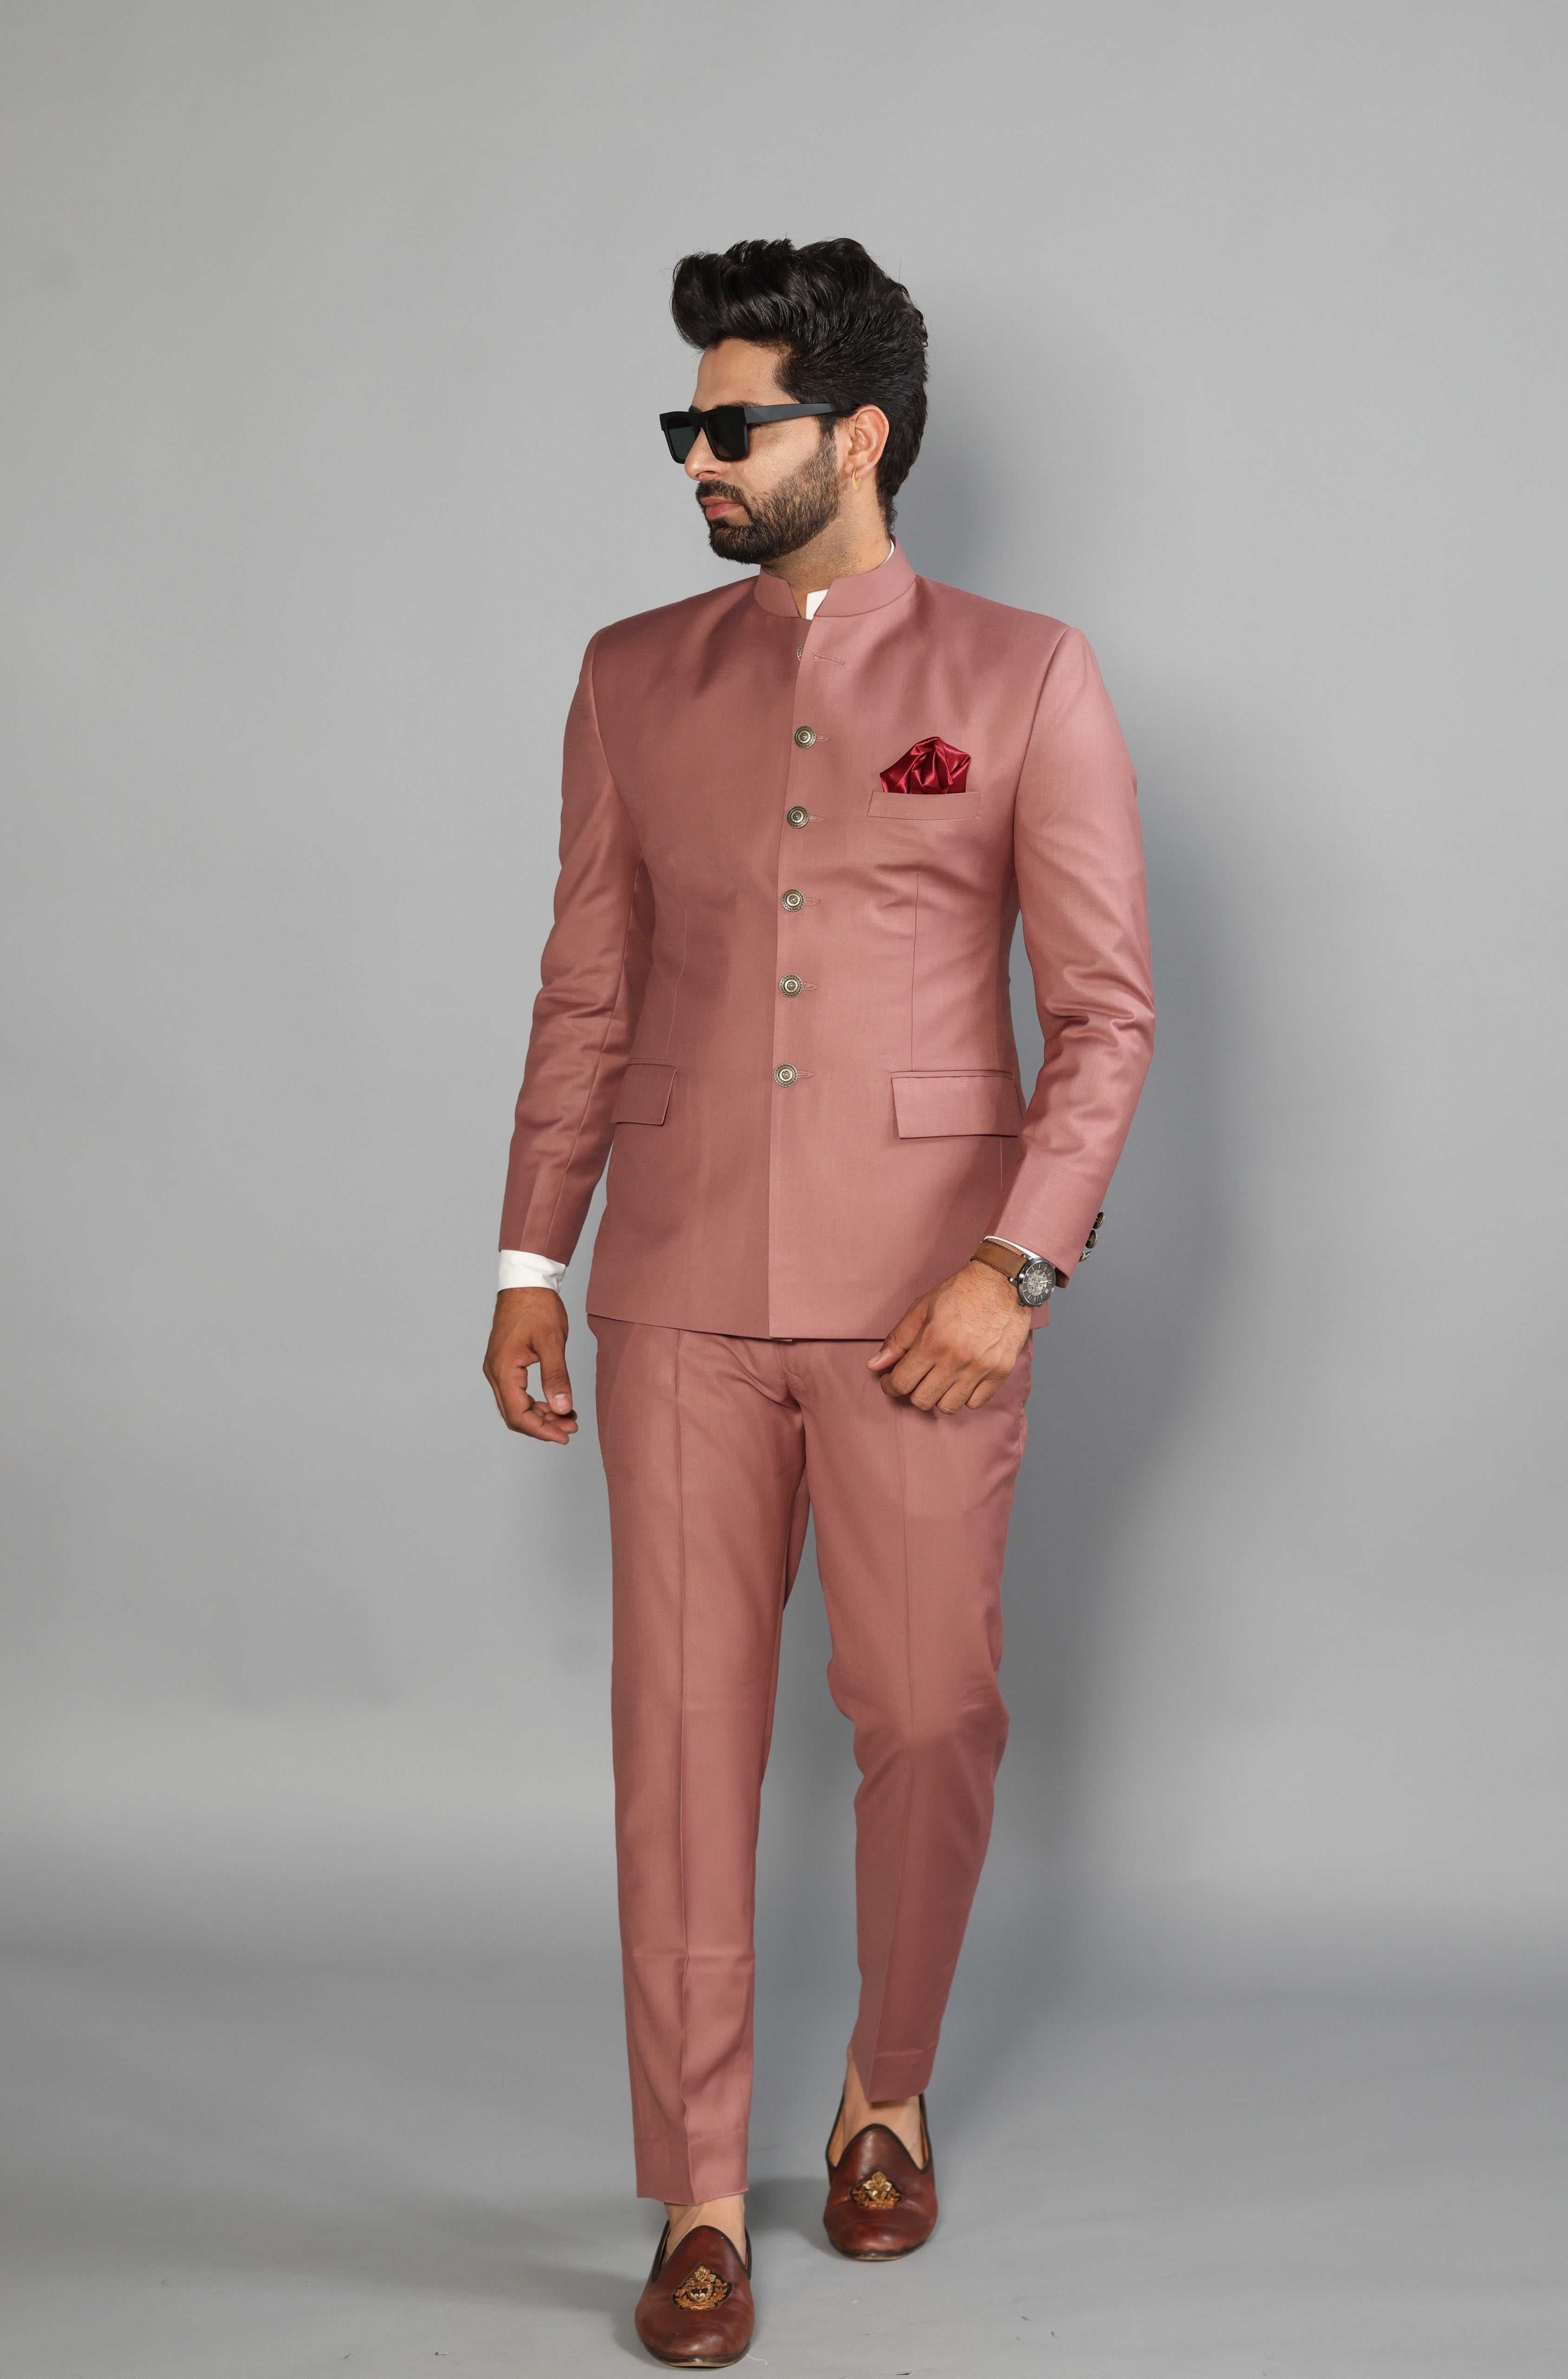 When Should We Wear Salwar Suit? Is Salwar Kameez Formal Wear?